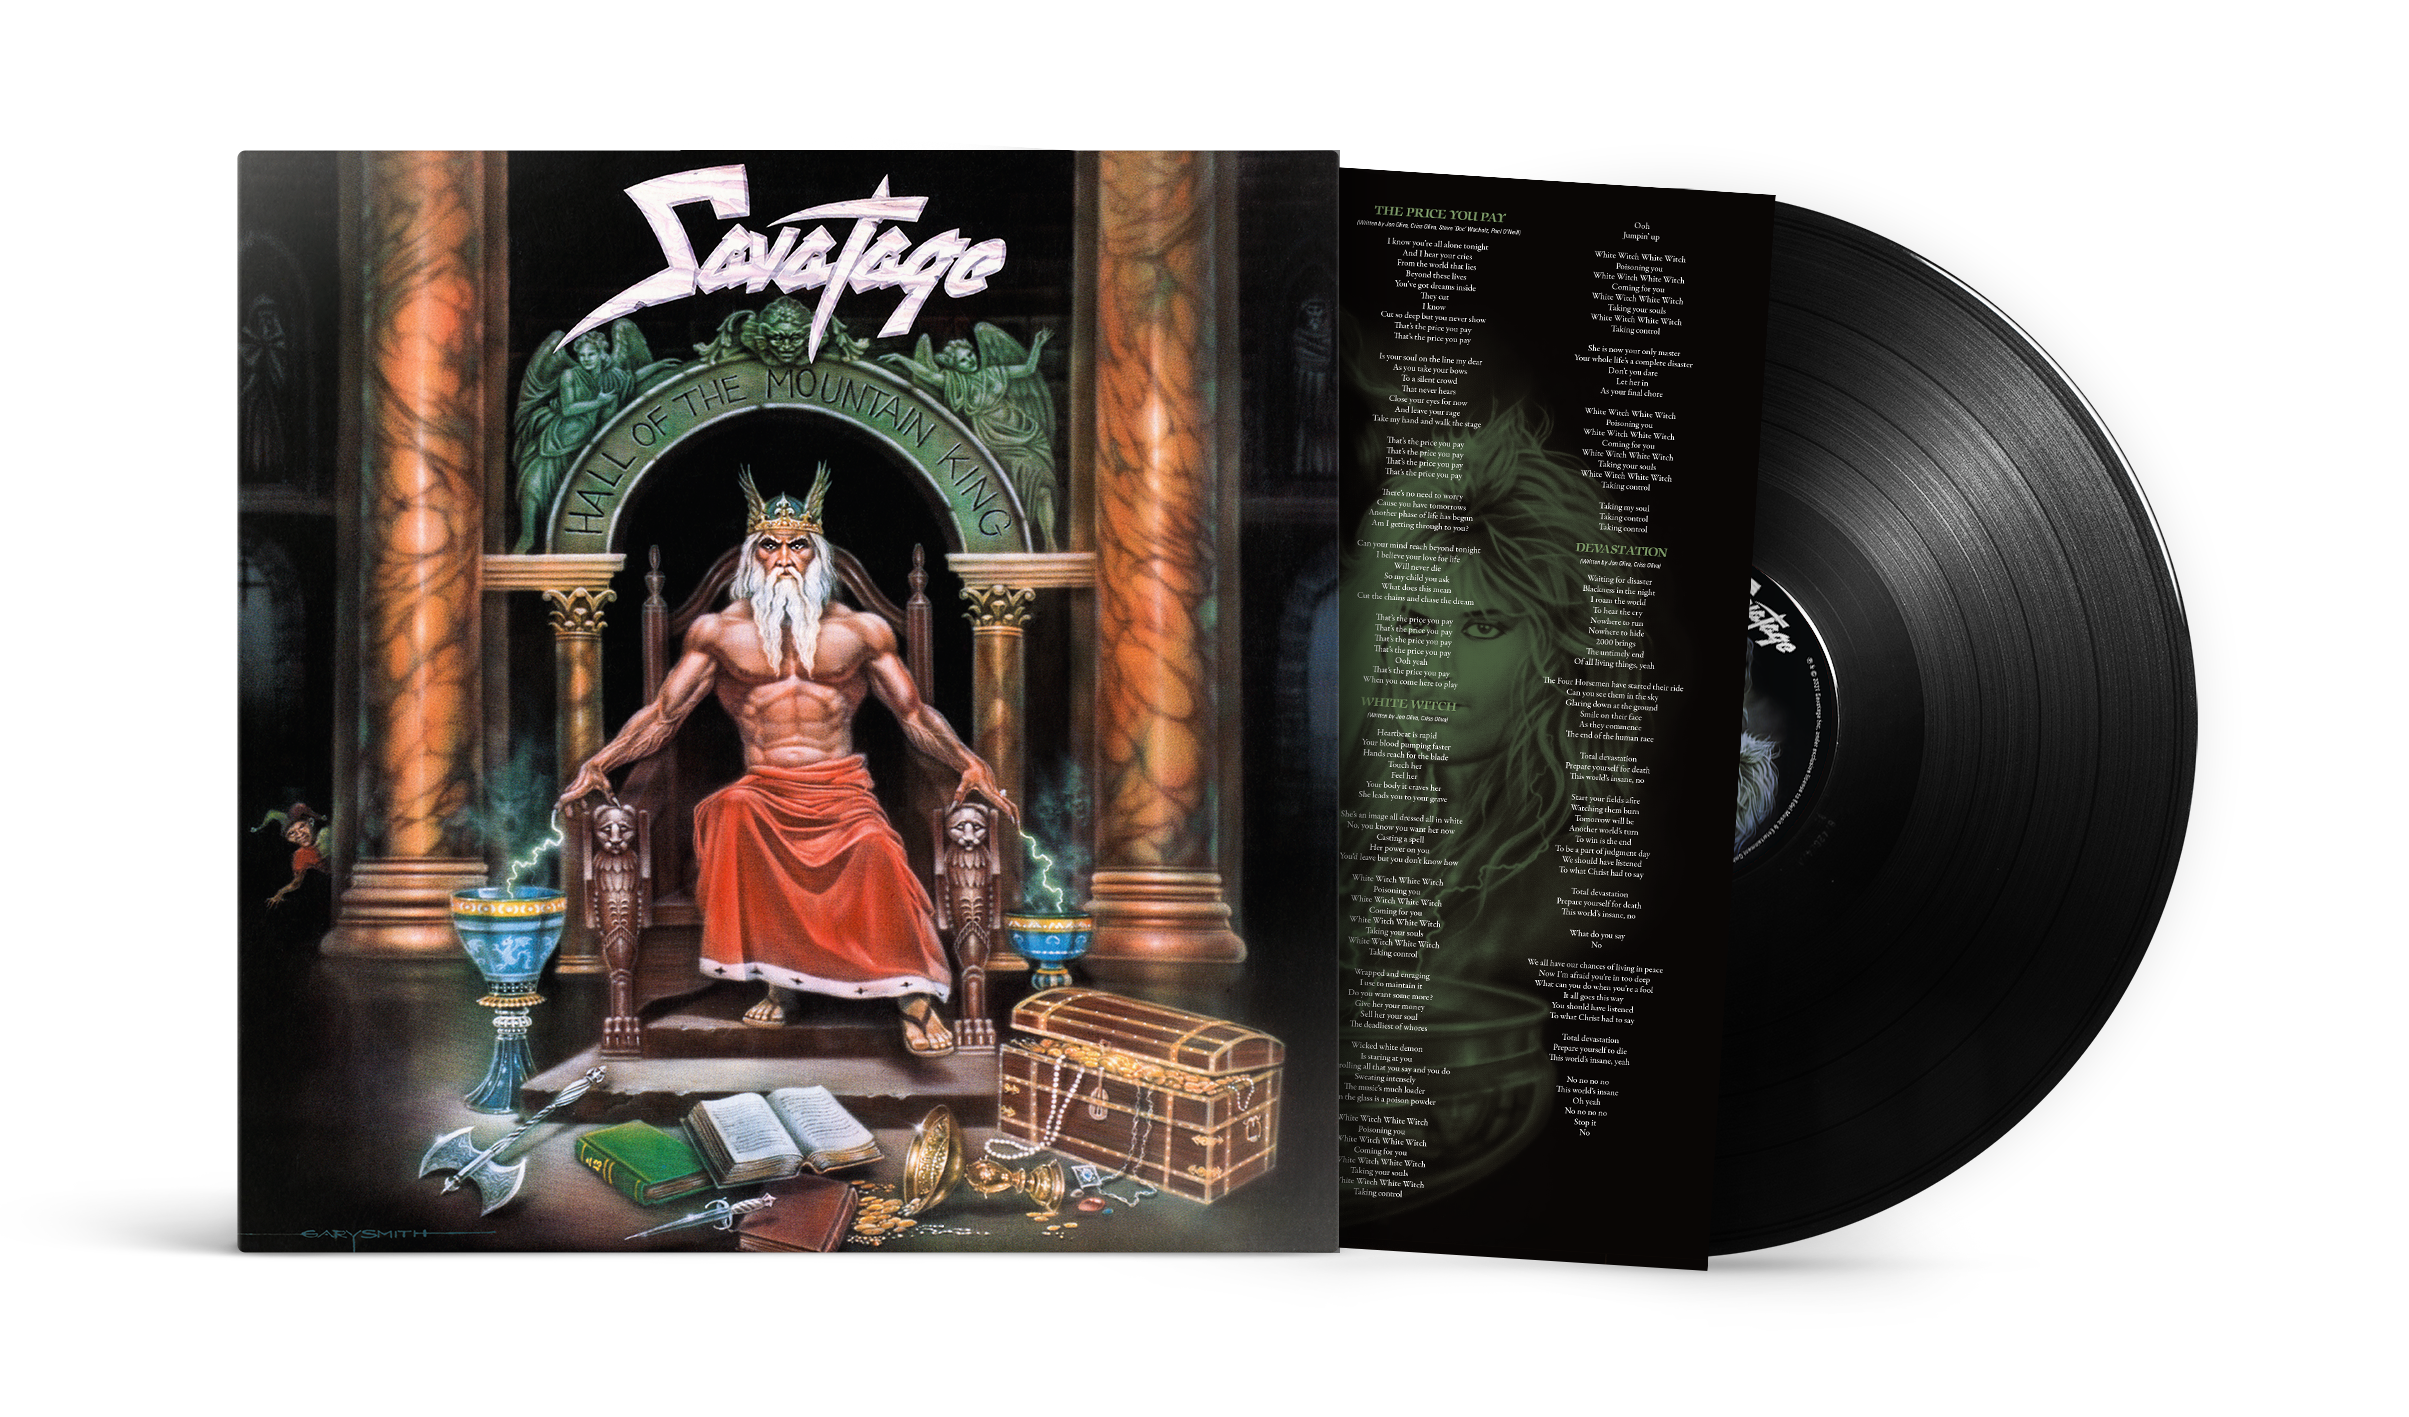 savatages-87er-album-hall-of-the-mountain-king-zurueck-auf-vinyl